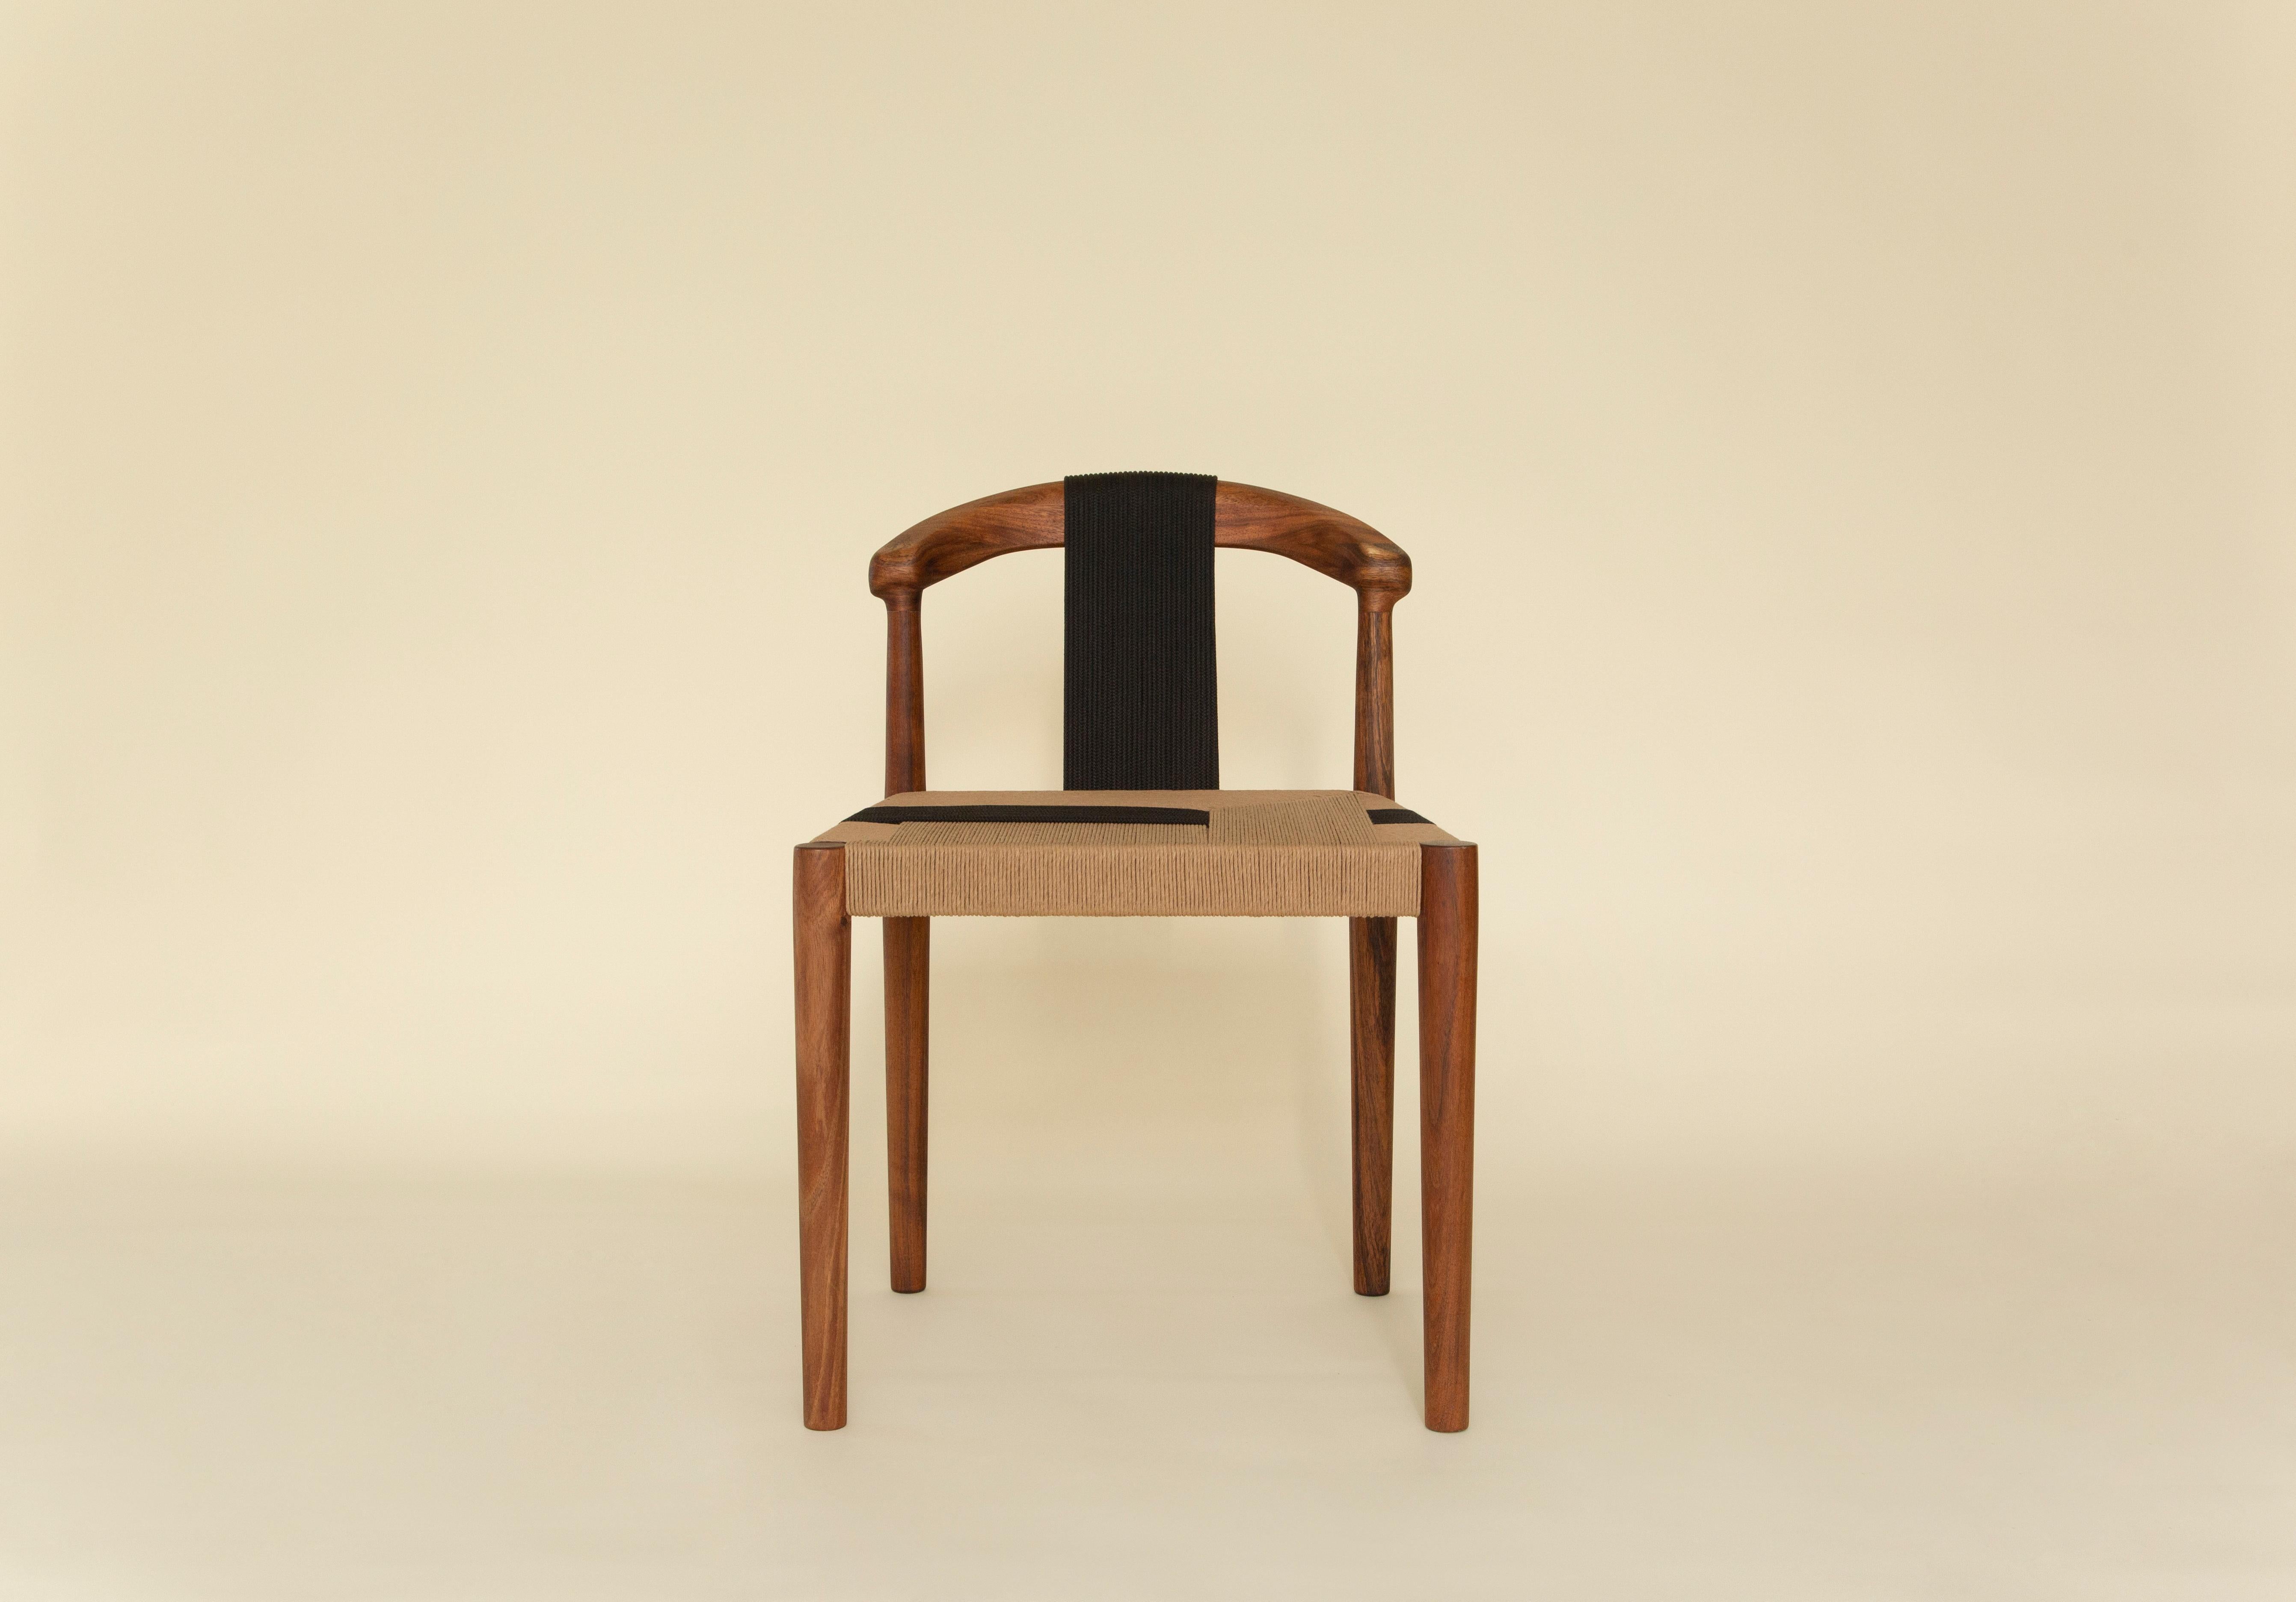 Fabriquée avec précision et soin, la chaise Emma témoigne du riche héritage de l'artisanat mexicain. Chaque chaise est une œuvre d'art unique, mettant en valeur les mains habiles qui donnent vie à des techniques ancestrales.

Découvrez un nouveau